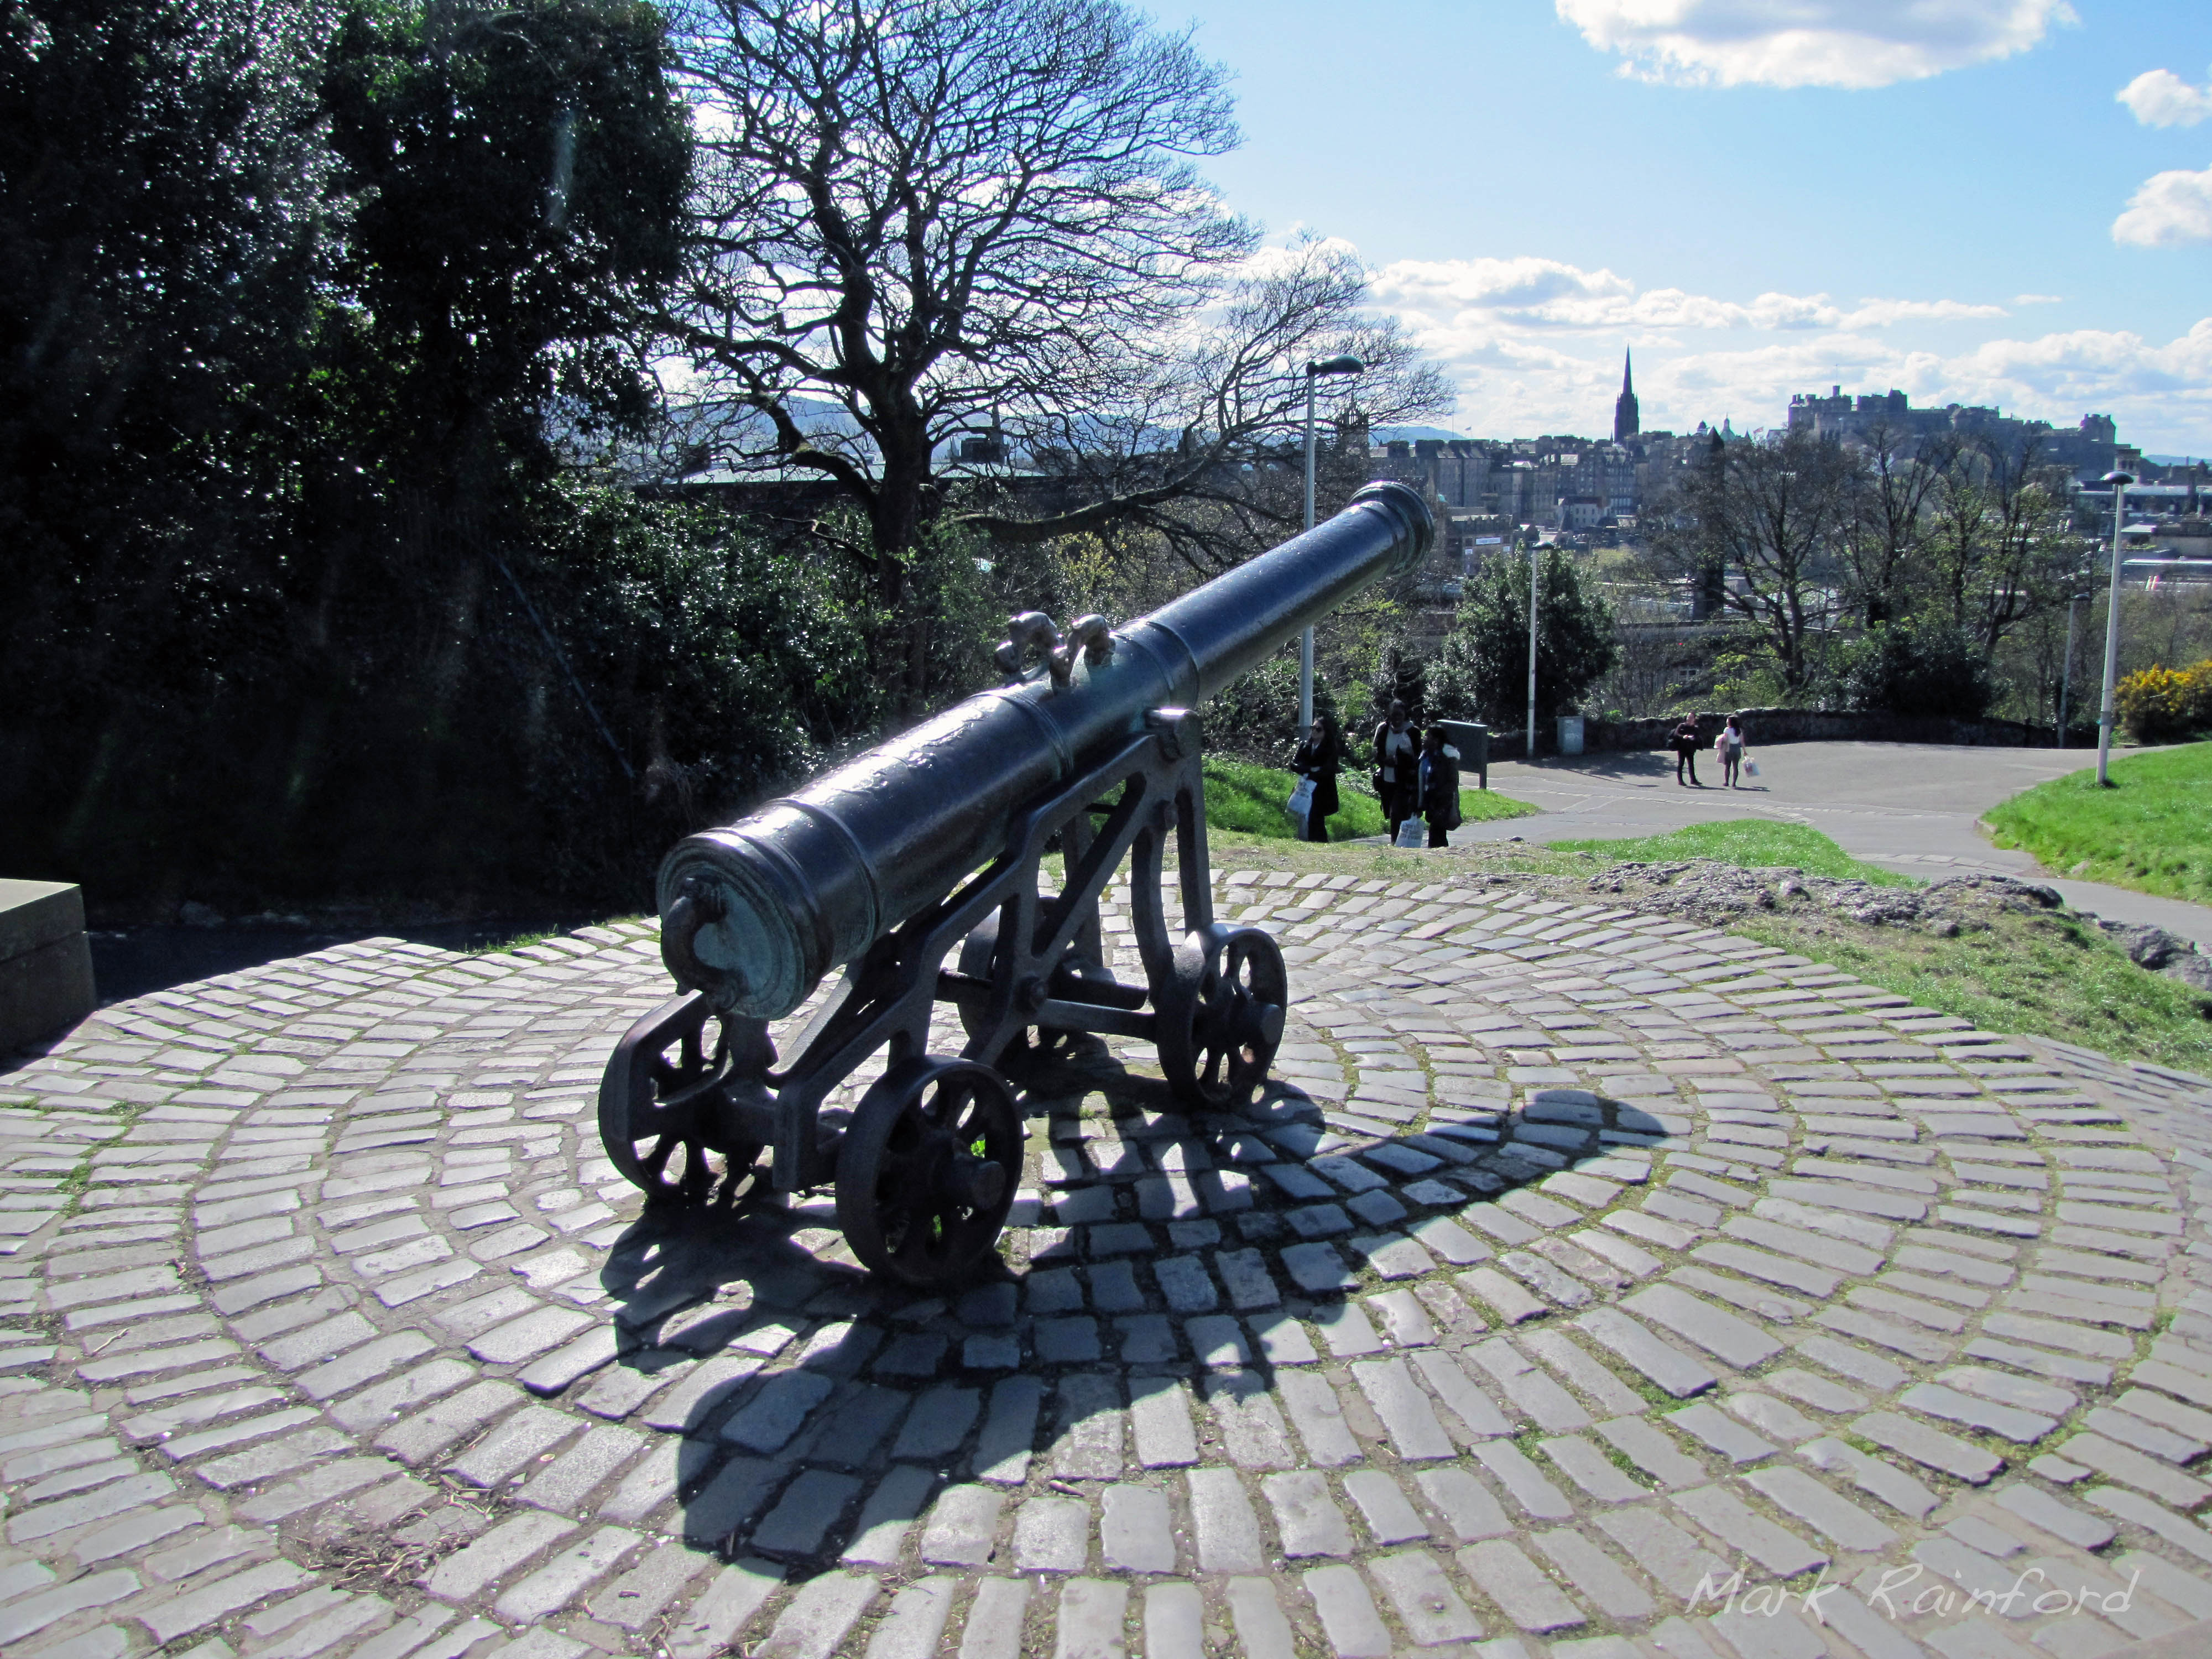 Portuguese war cannon